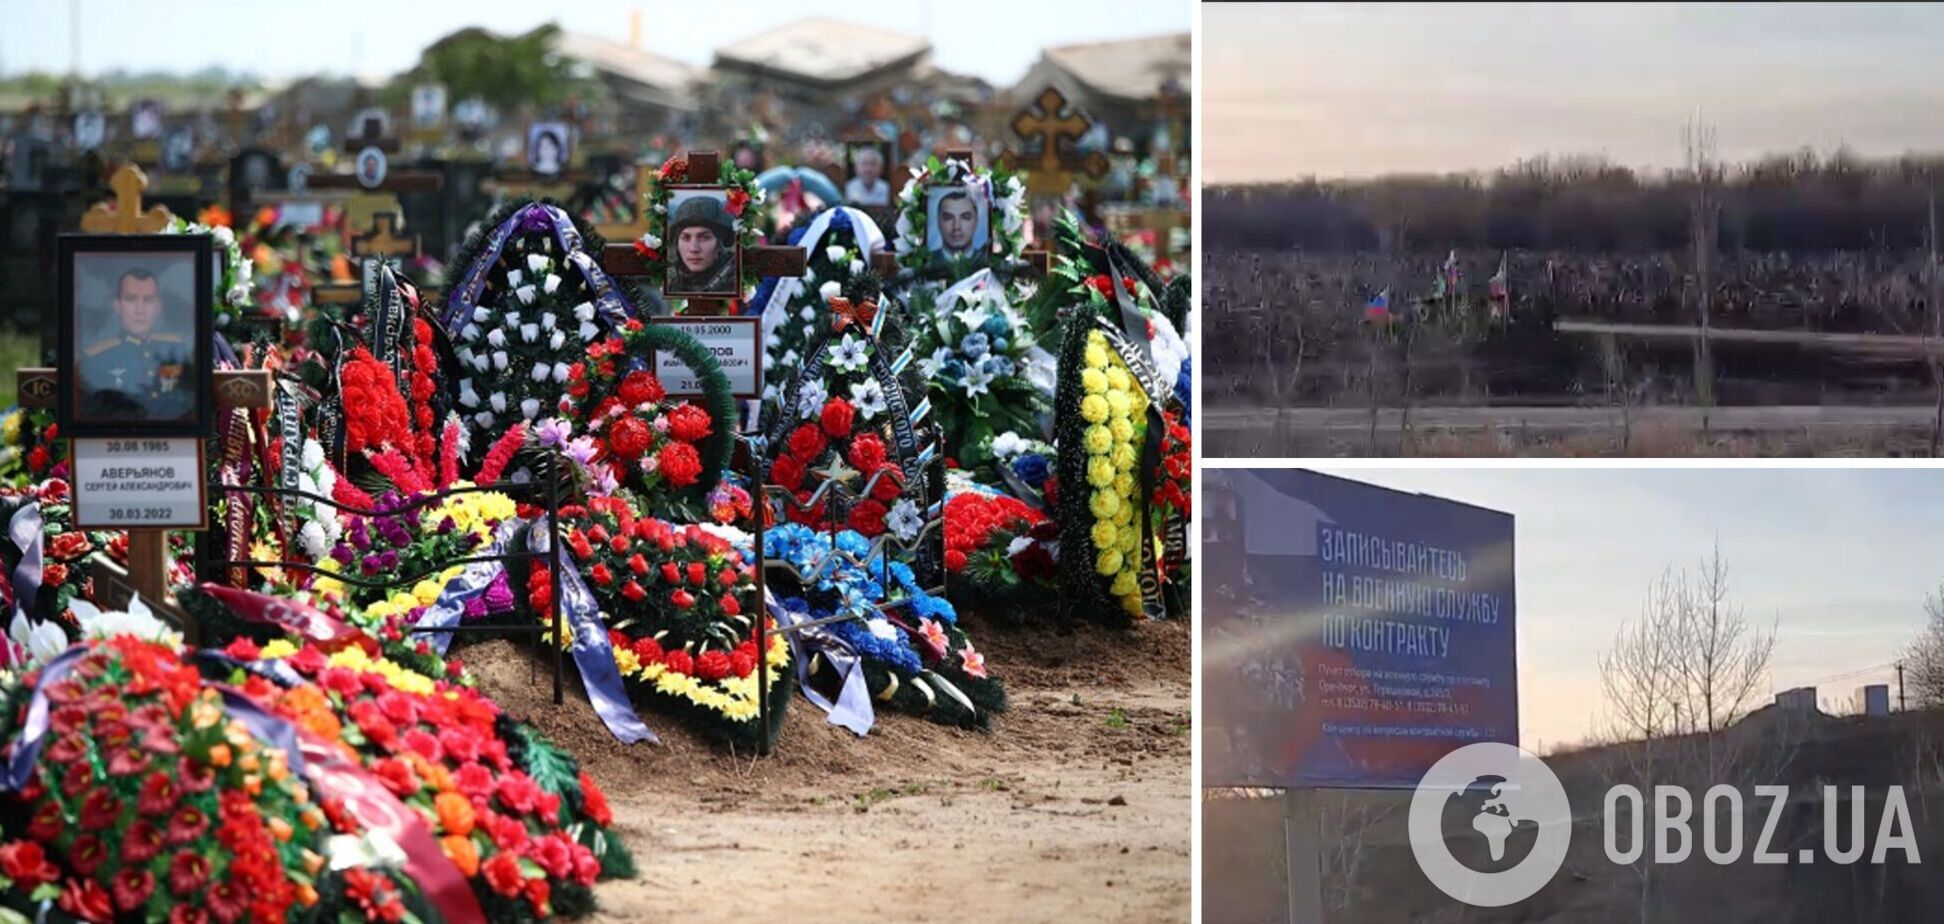 У Росії рекламу служби за контрактом розмістили біля кладовища: у ФСБ поскаржилися на  'дискредитацію' армії. Відео 